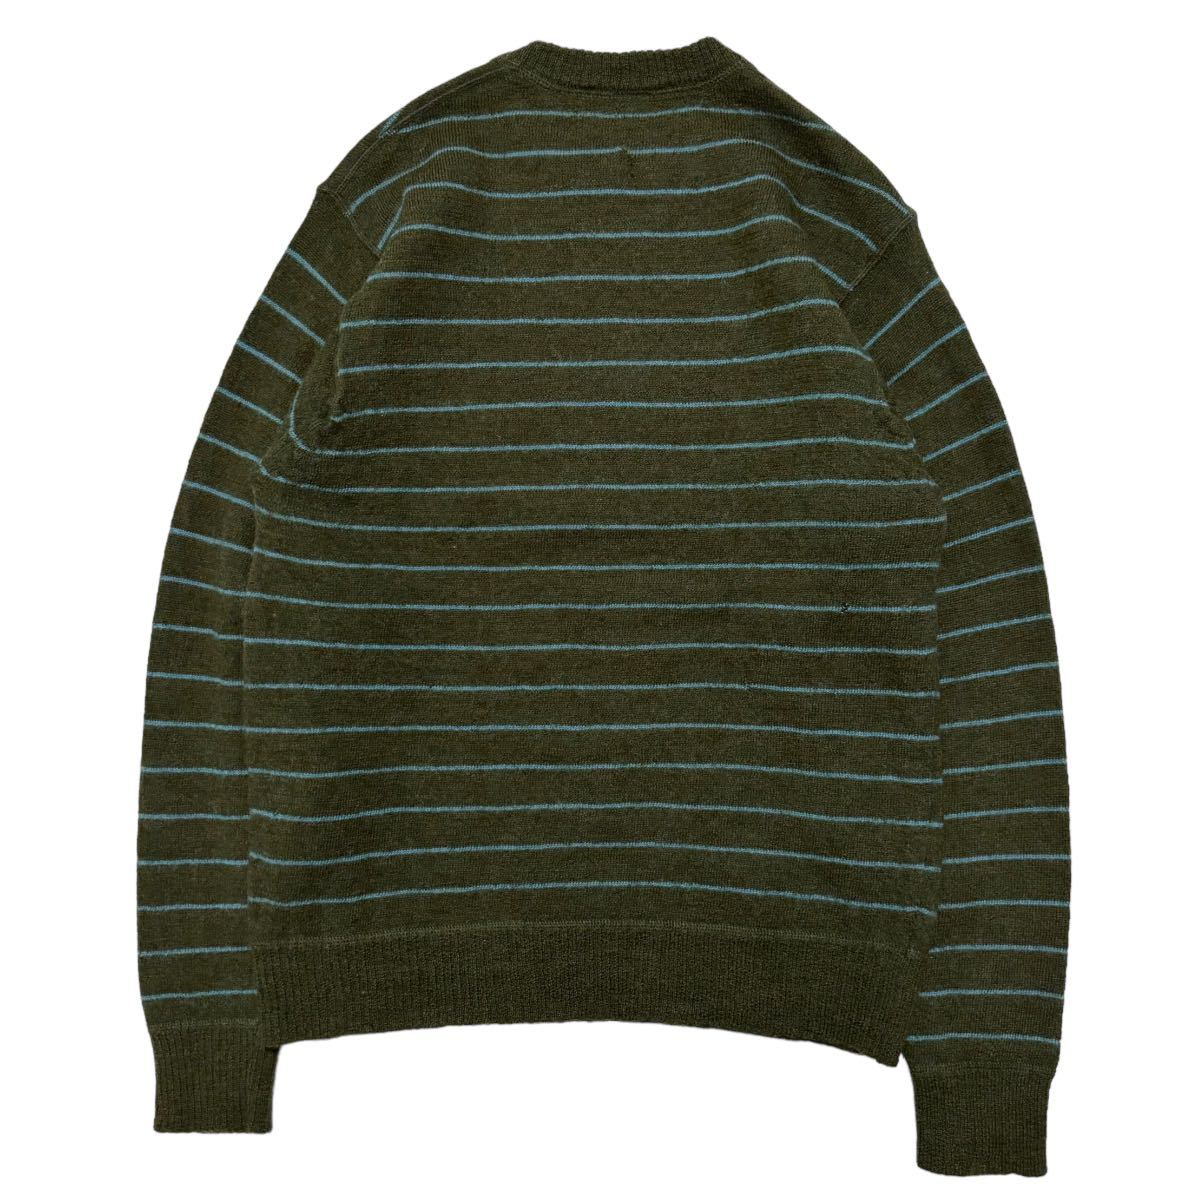  б/у одежда OLDGAP Old Gap окантовка вязаный свитер 